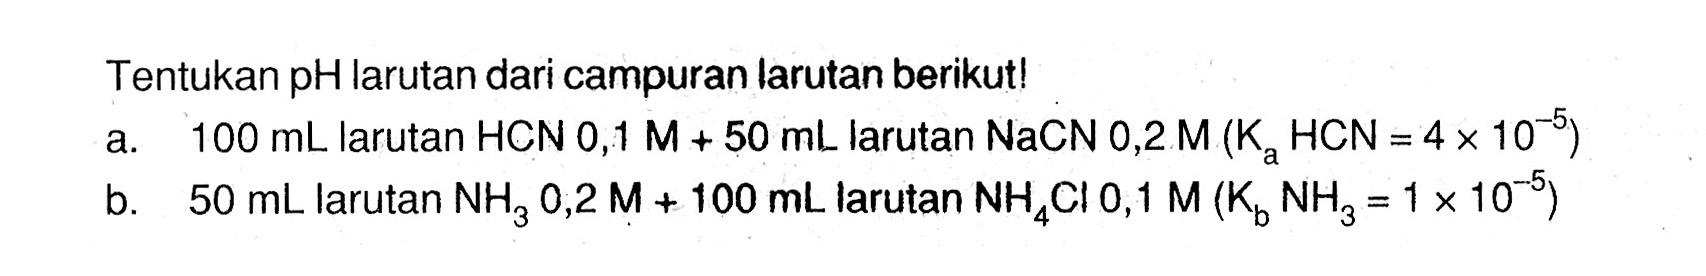 Tentukan pH larutan dari campuran larutan berikut!a. 100 mL larutan HCN 0,1 M+50 mL larutan NaCN 0,2 M(Ka HCN=4 x 10^-5) b. 50 mL larutan NH3 0,2 M+100 mL  larutan NH4Cl 0,1 M(Kb NH3=1 x 10^-5) 